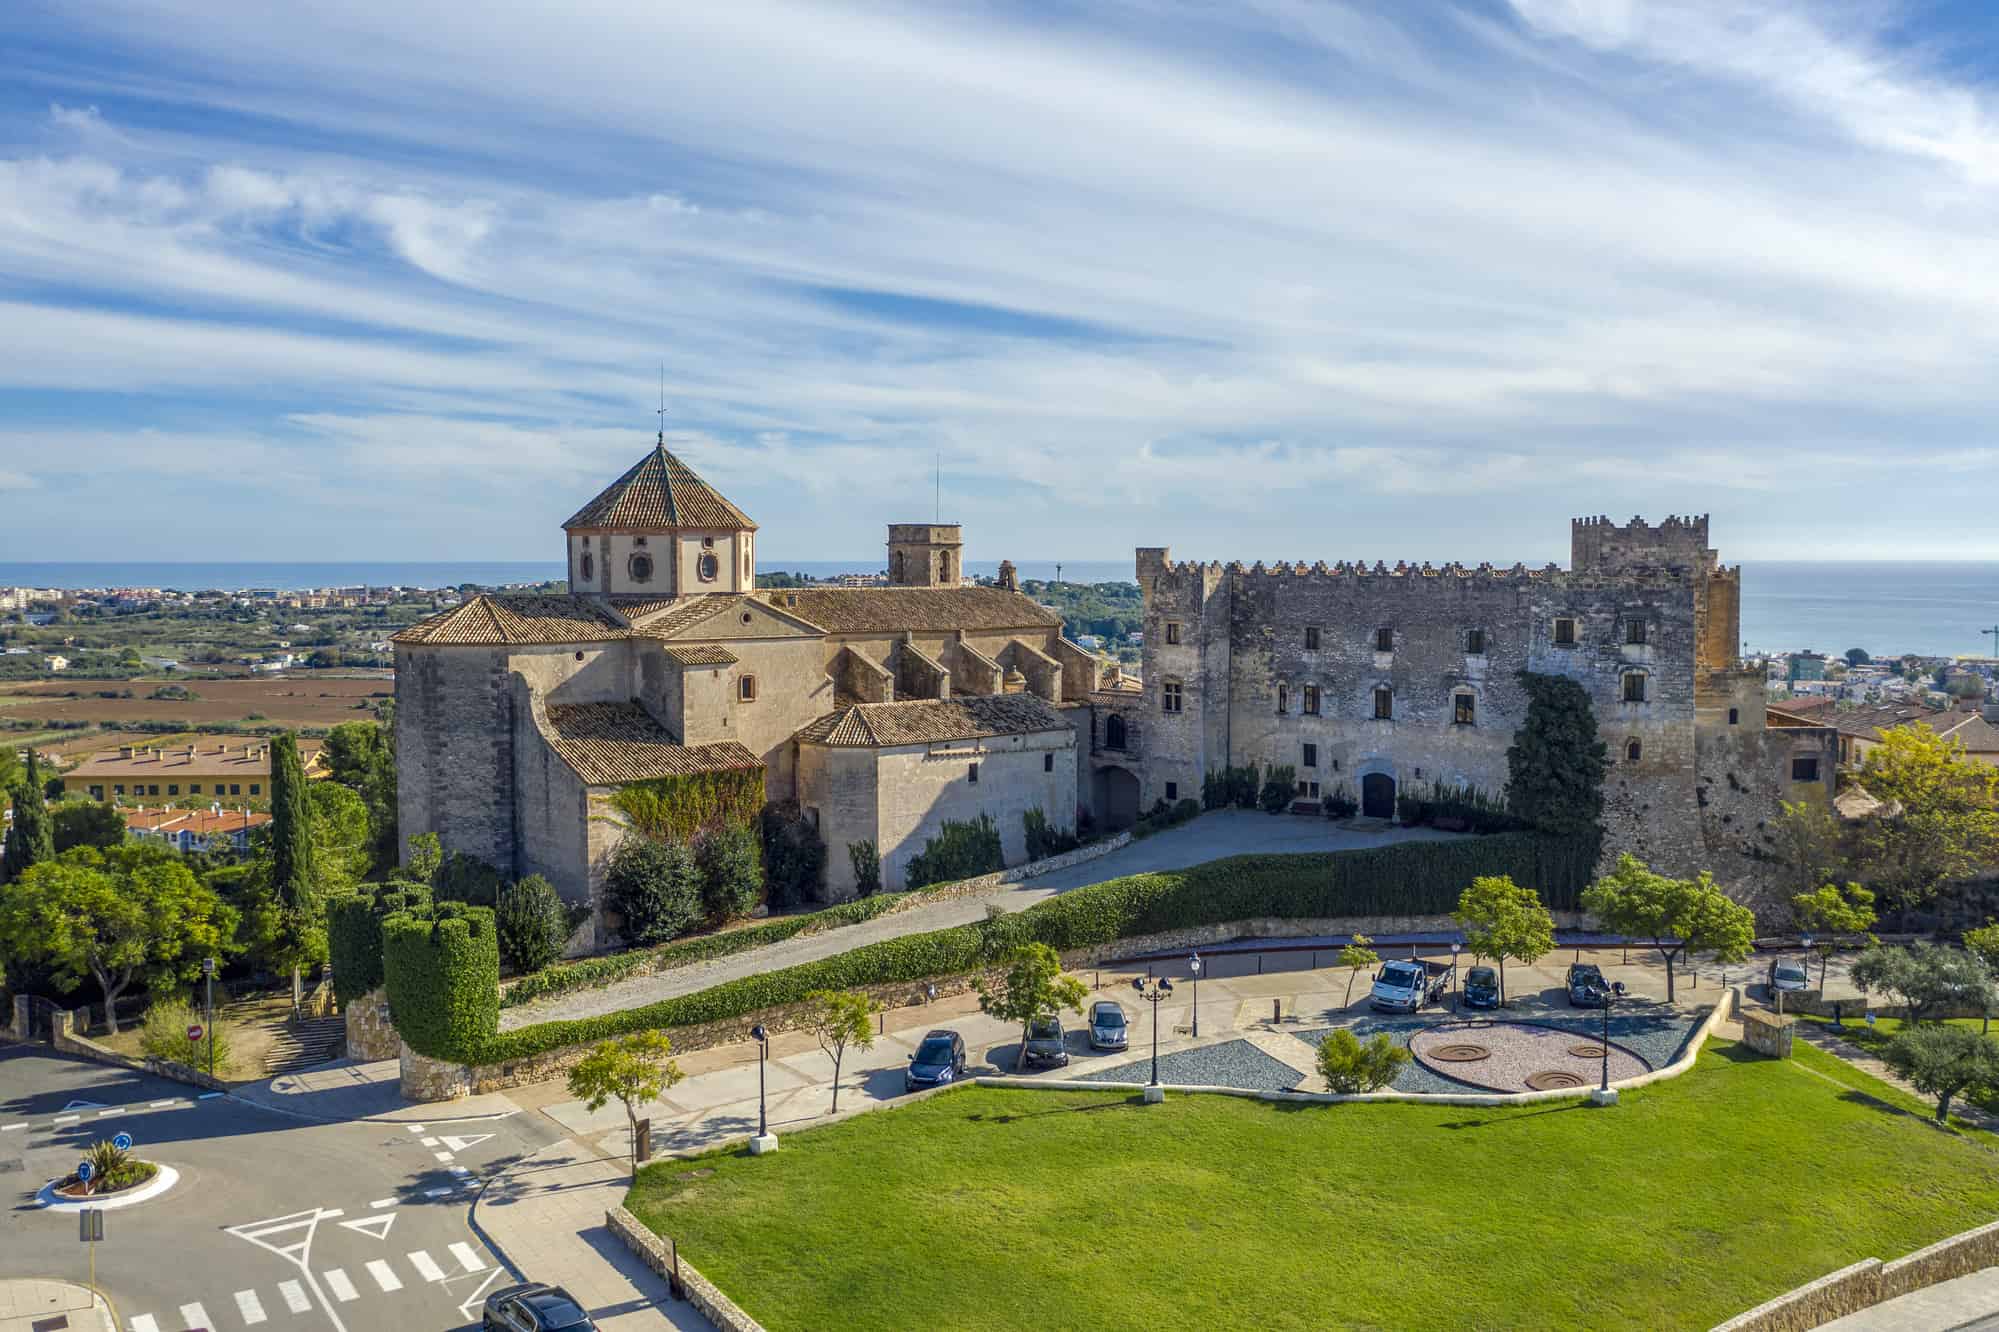 A view of Sant Marti Church and Altafulla Castle in Altafulla, Catalonia Spain